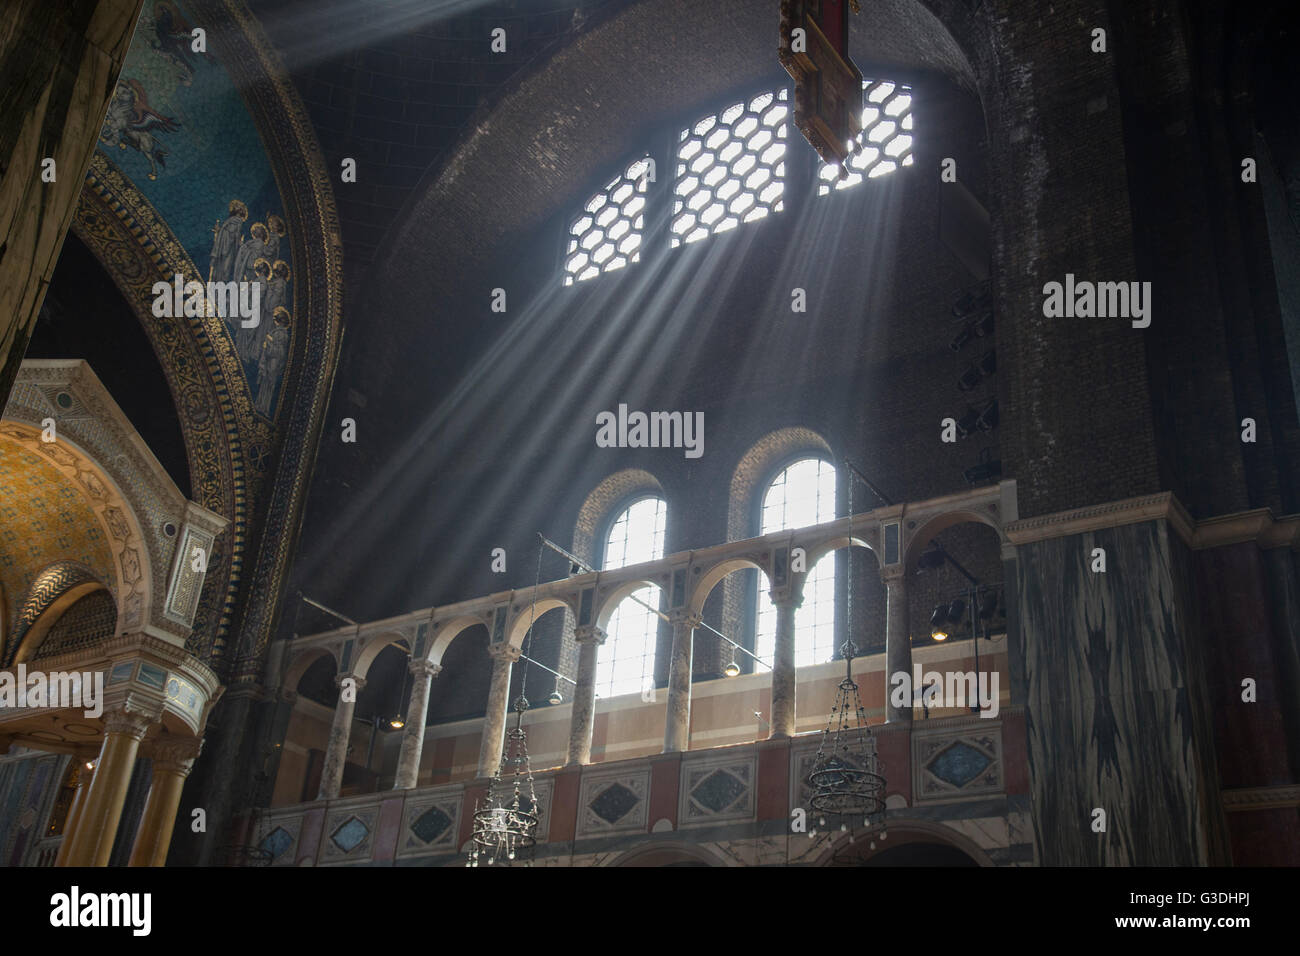 Interior de la catedral de Westminster mostrando los rayos de luz solar entrante. La Catedral de Westminster, la Iglesia Católica Romana, Londres Foto de stock